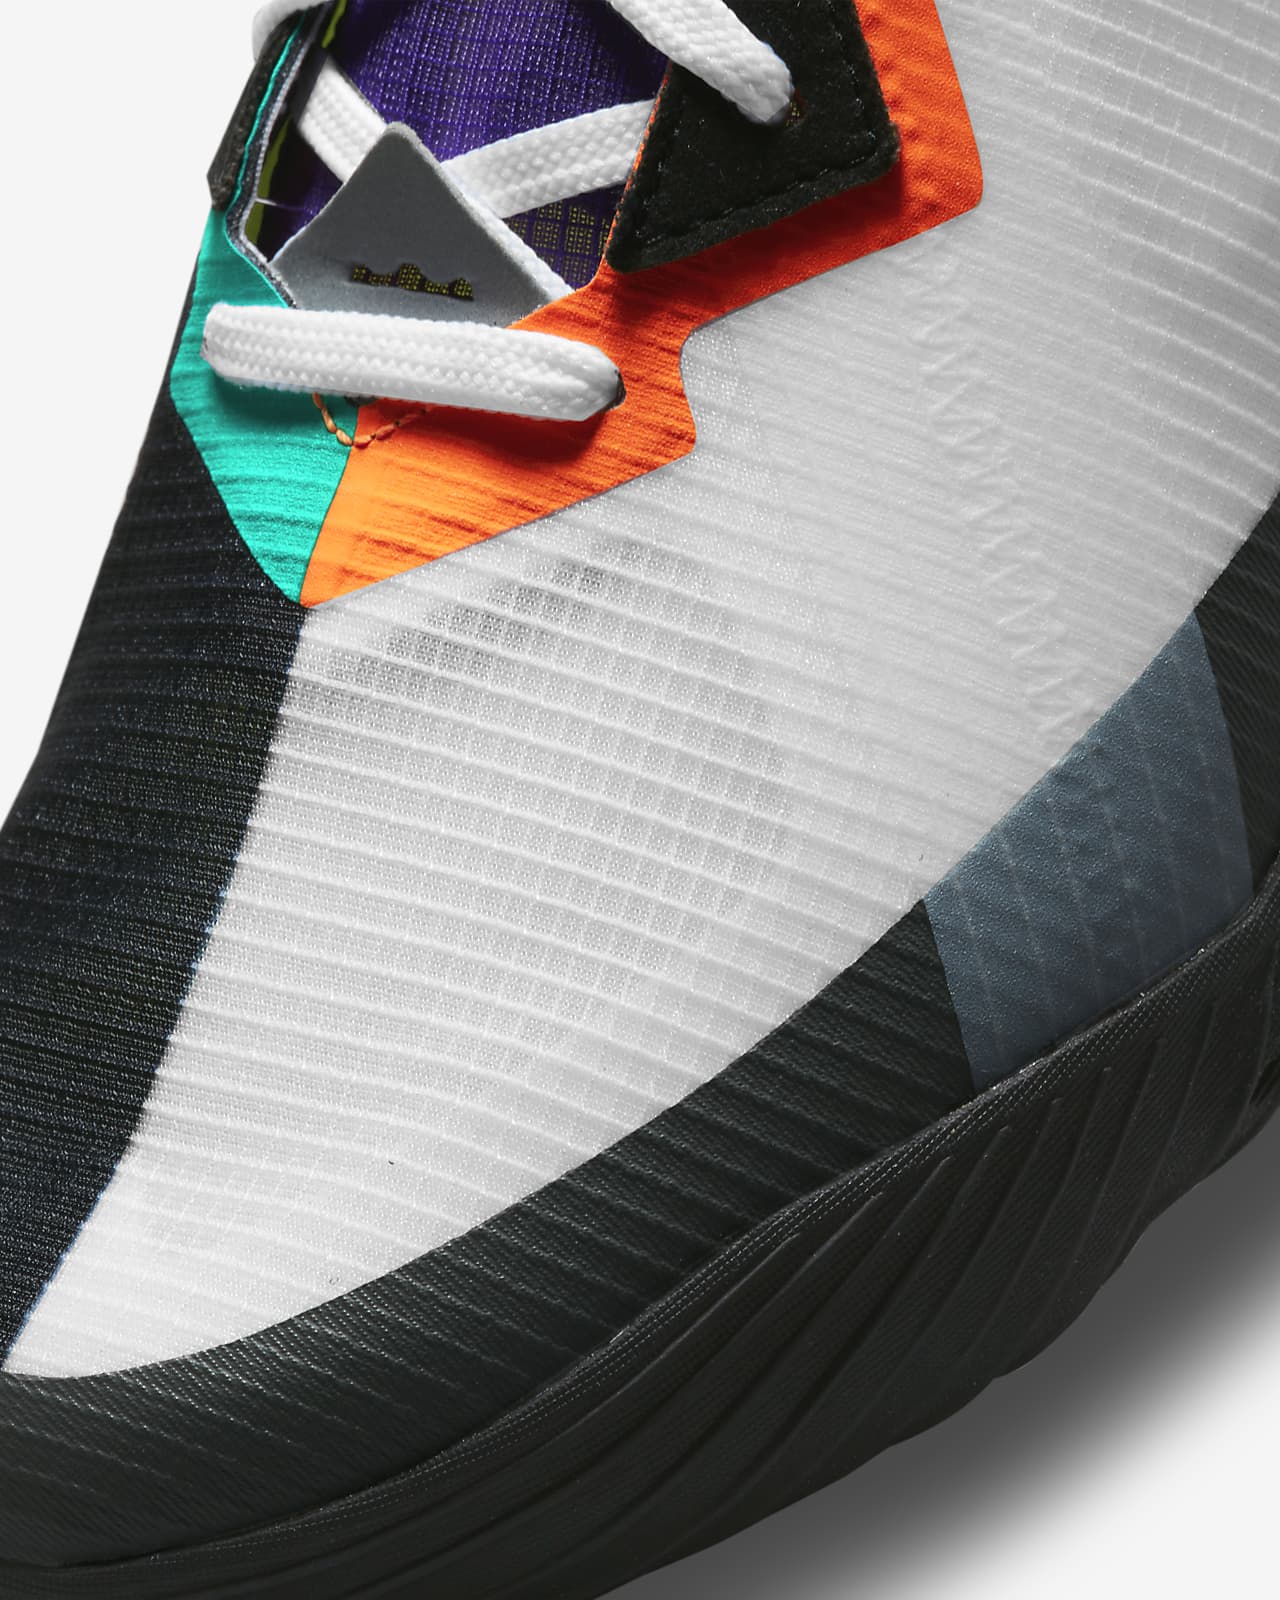 LeBron 18 Low Basketball Shoe. Nike.com